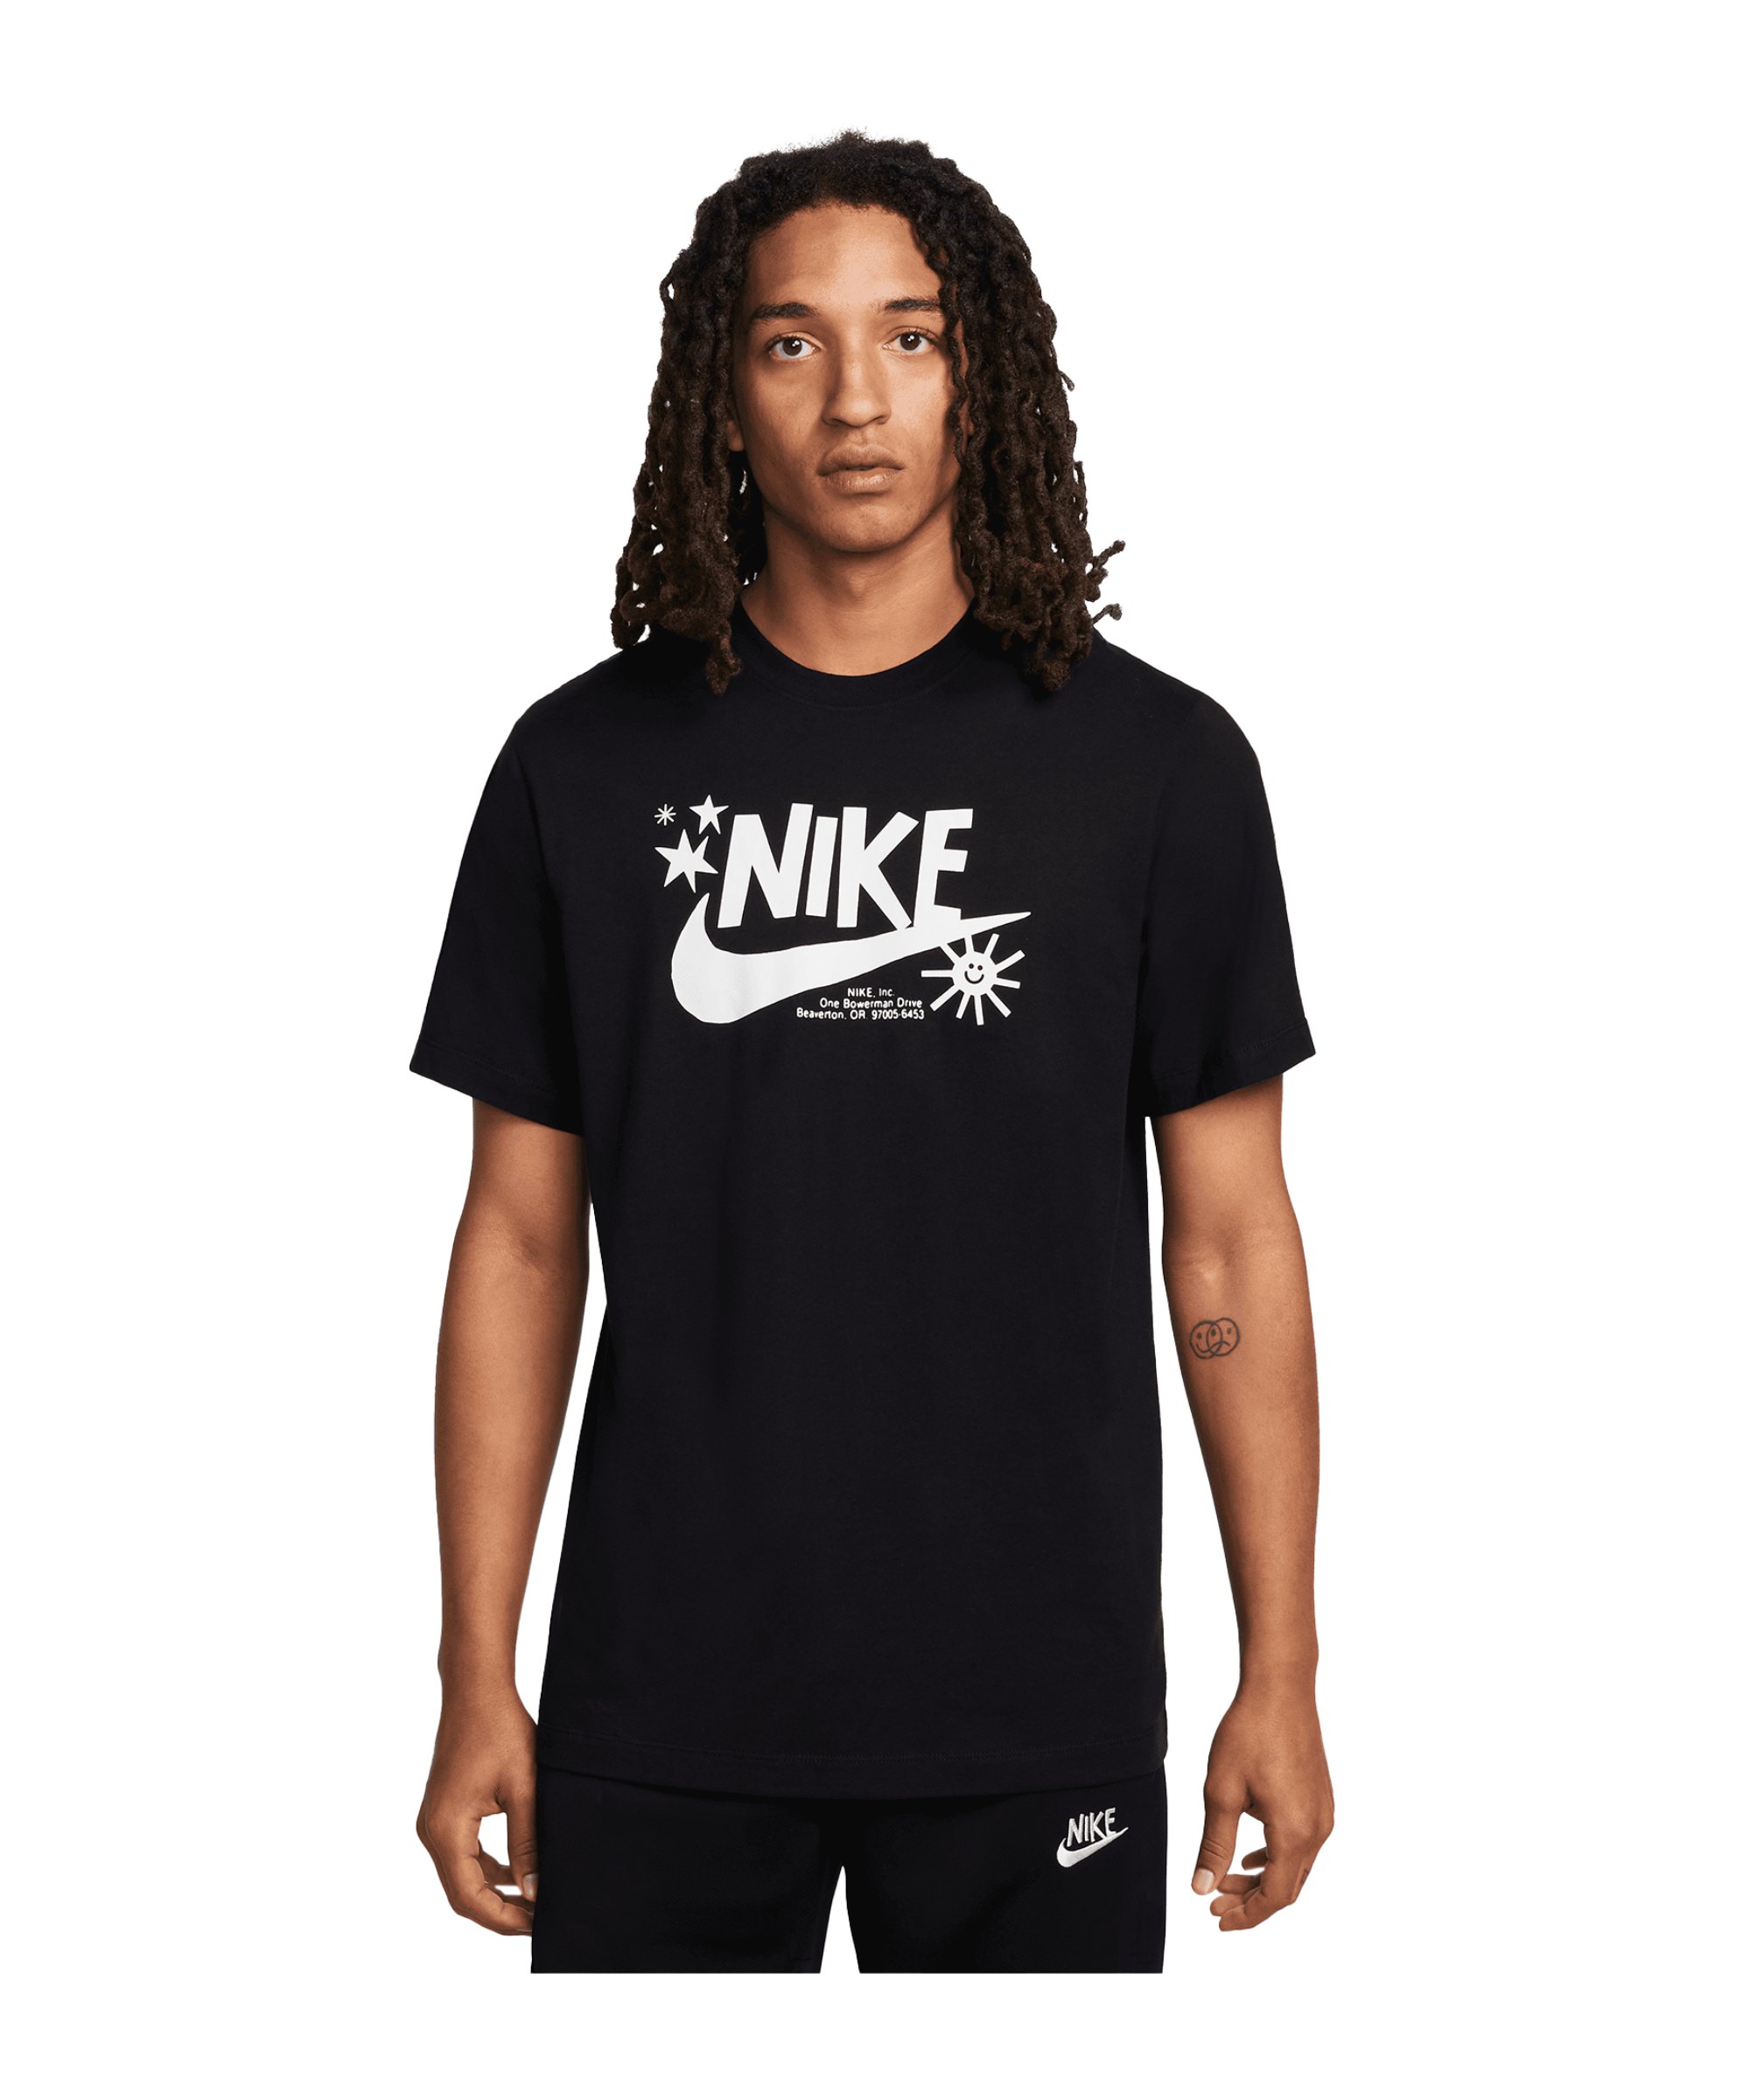 Nike T-Shirt Schwarz F010 - schwarz